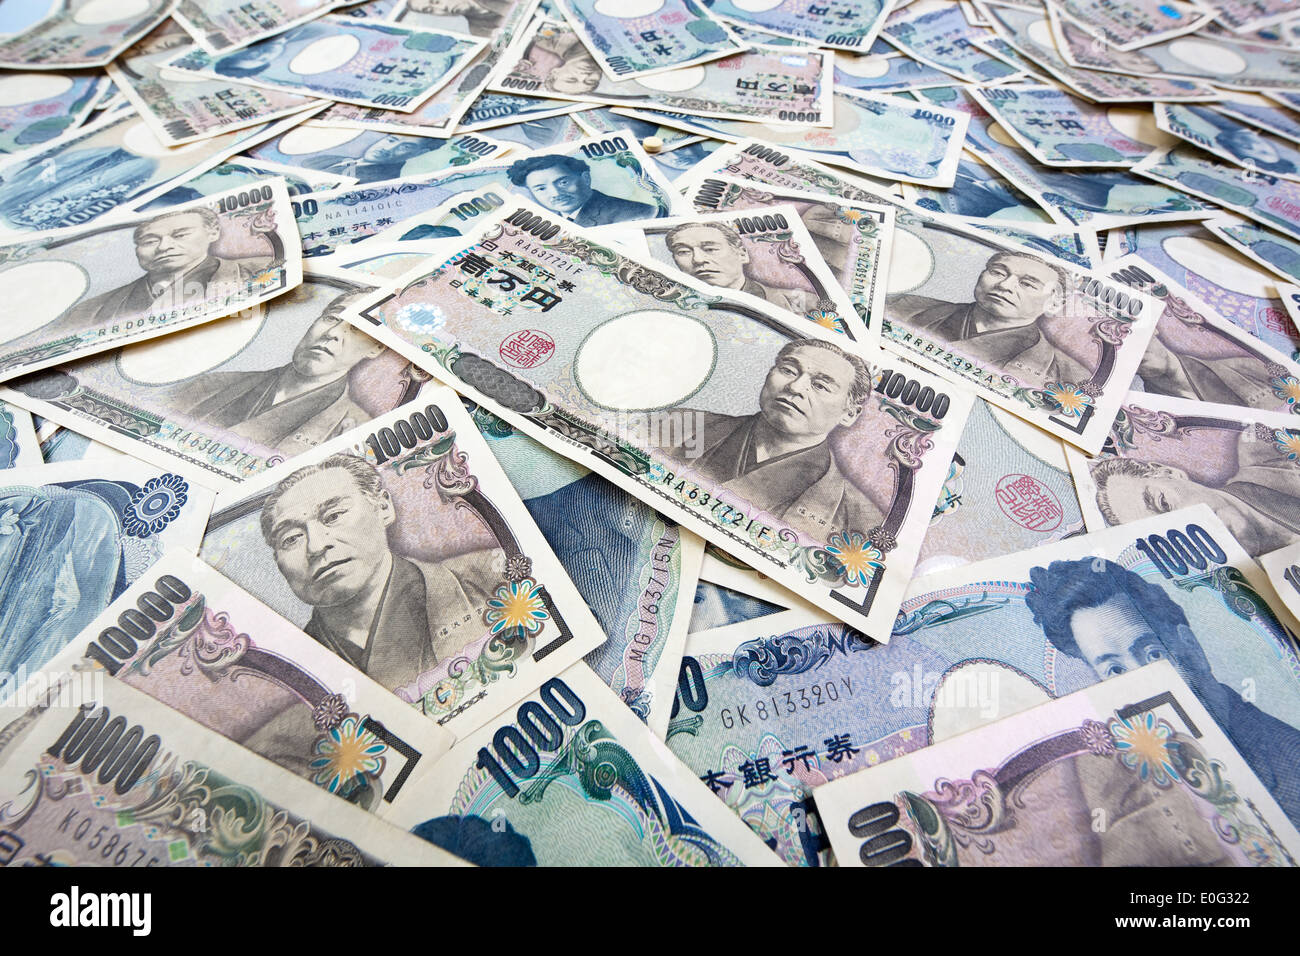 Un montón de billetes de banco en yenes de la moneda japonesa, el Yen Viele Geldscheine der japanischen Waehrung Foto de stock